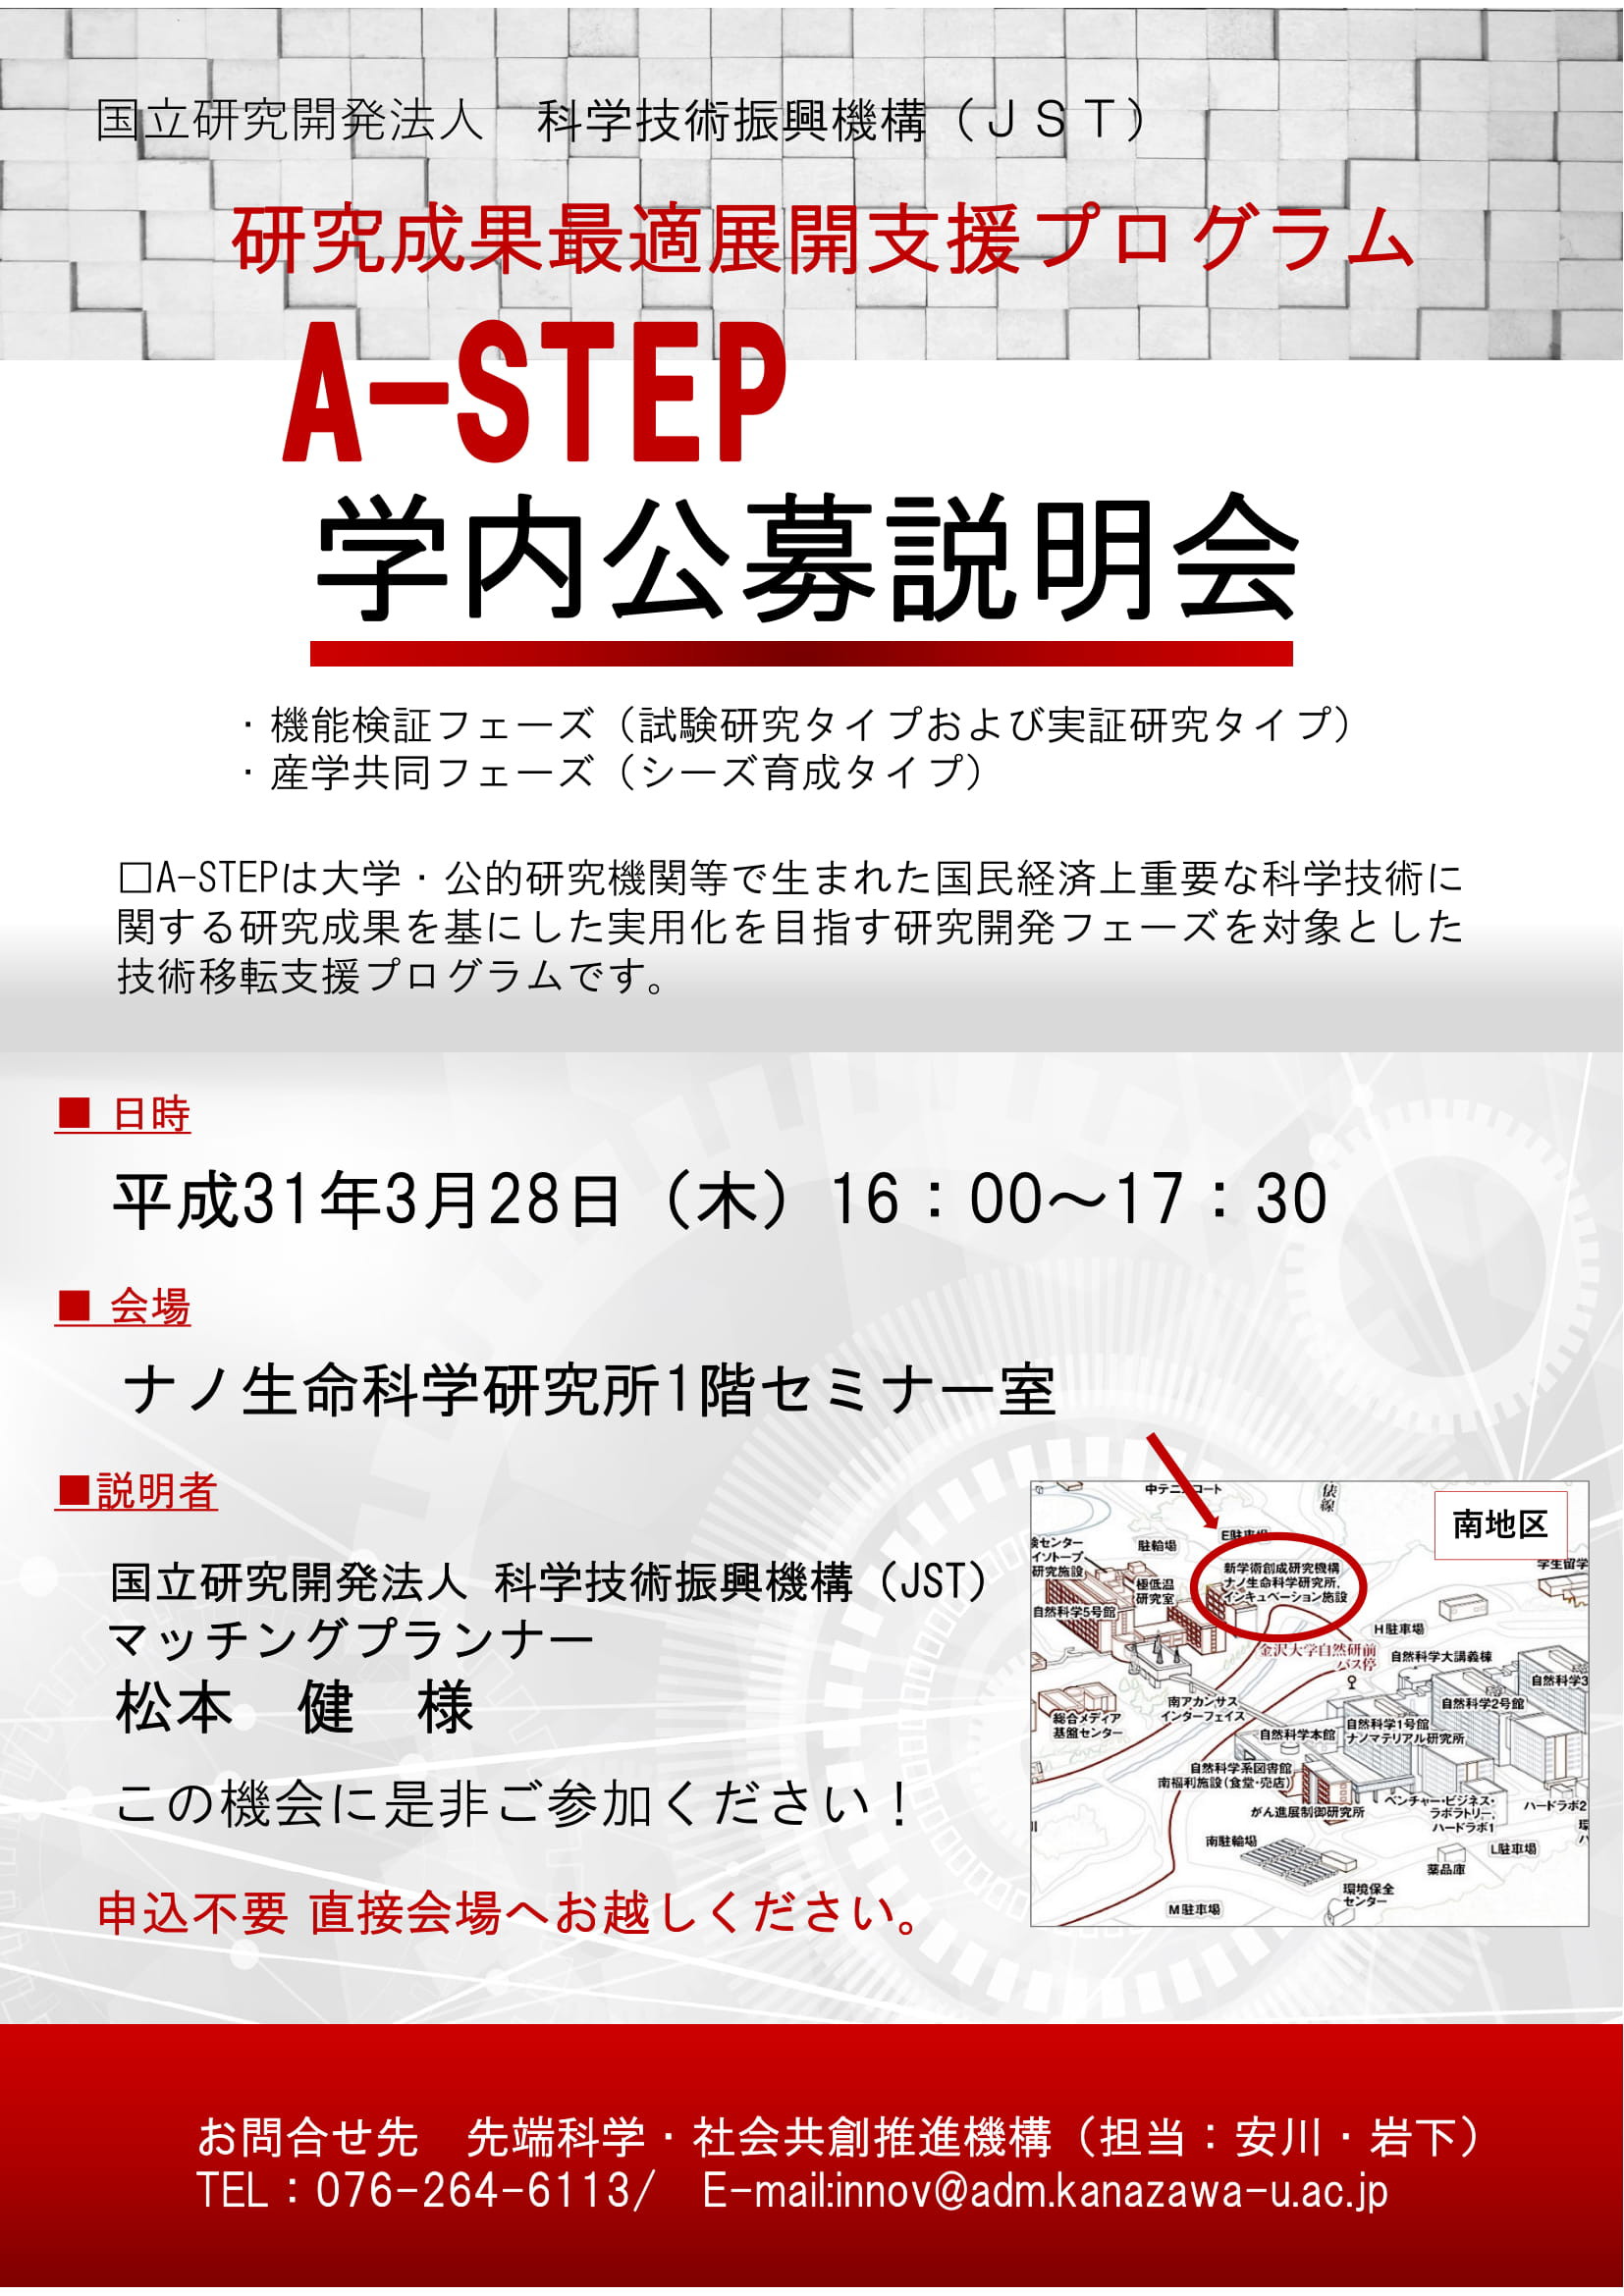 A-STEP313-2.jpg